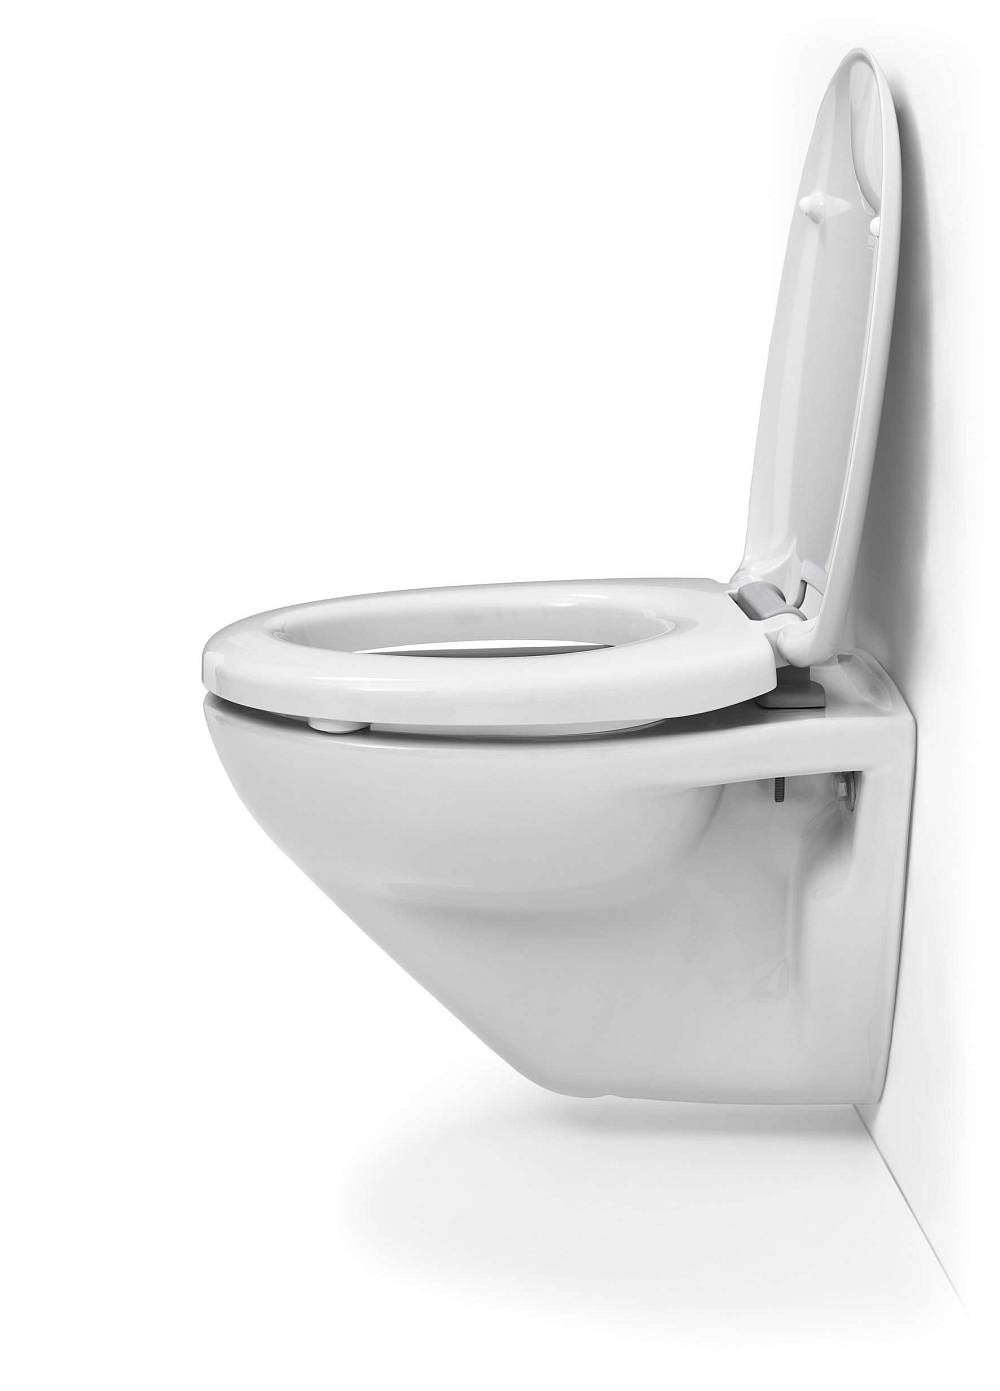 HARO – Notre marque de siège de WC pour les grossistes et le